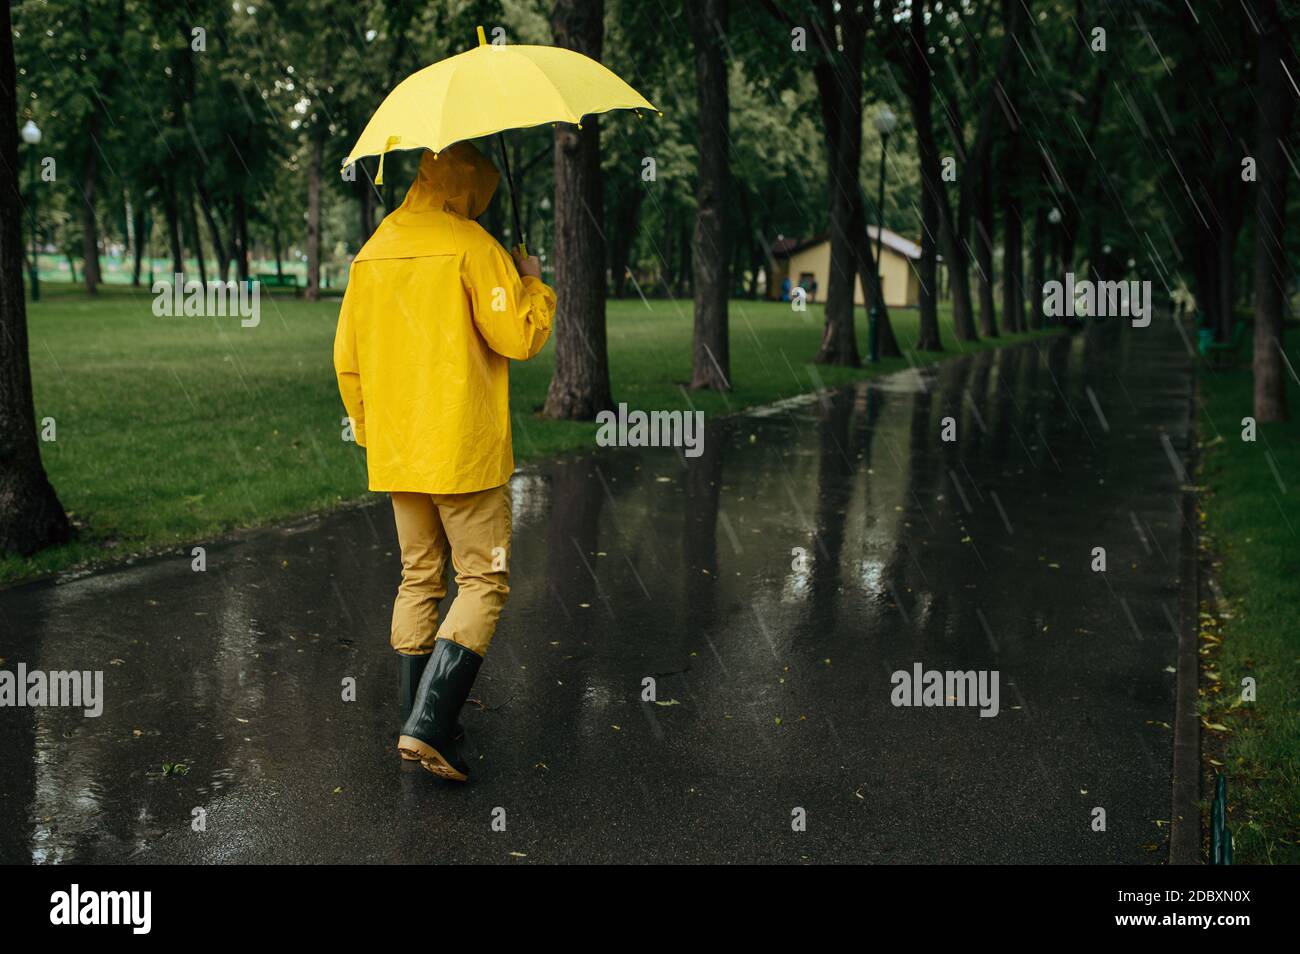 Regencape Gummi Stockfotos und -bilder Kaufen - Alamy